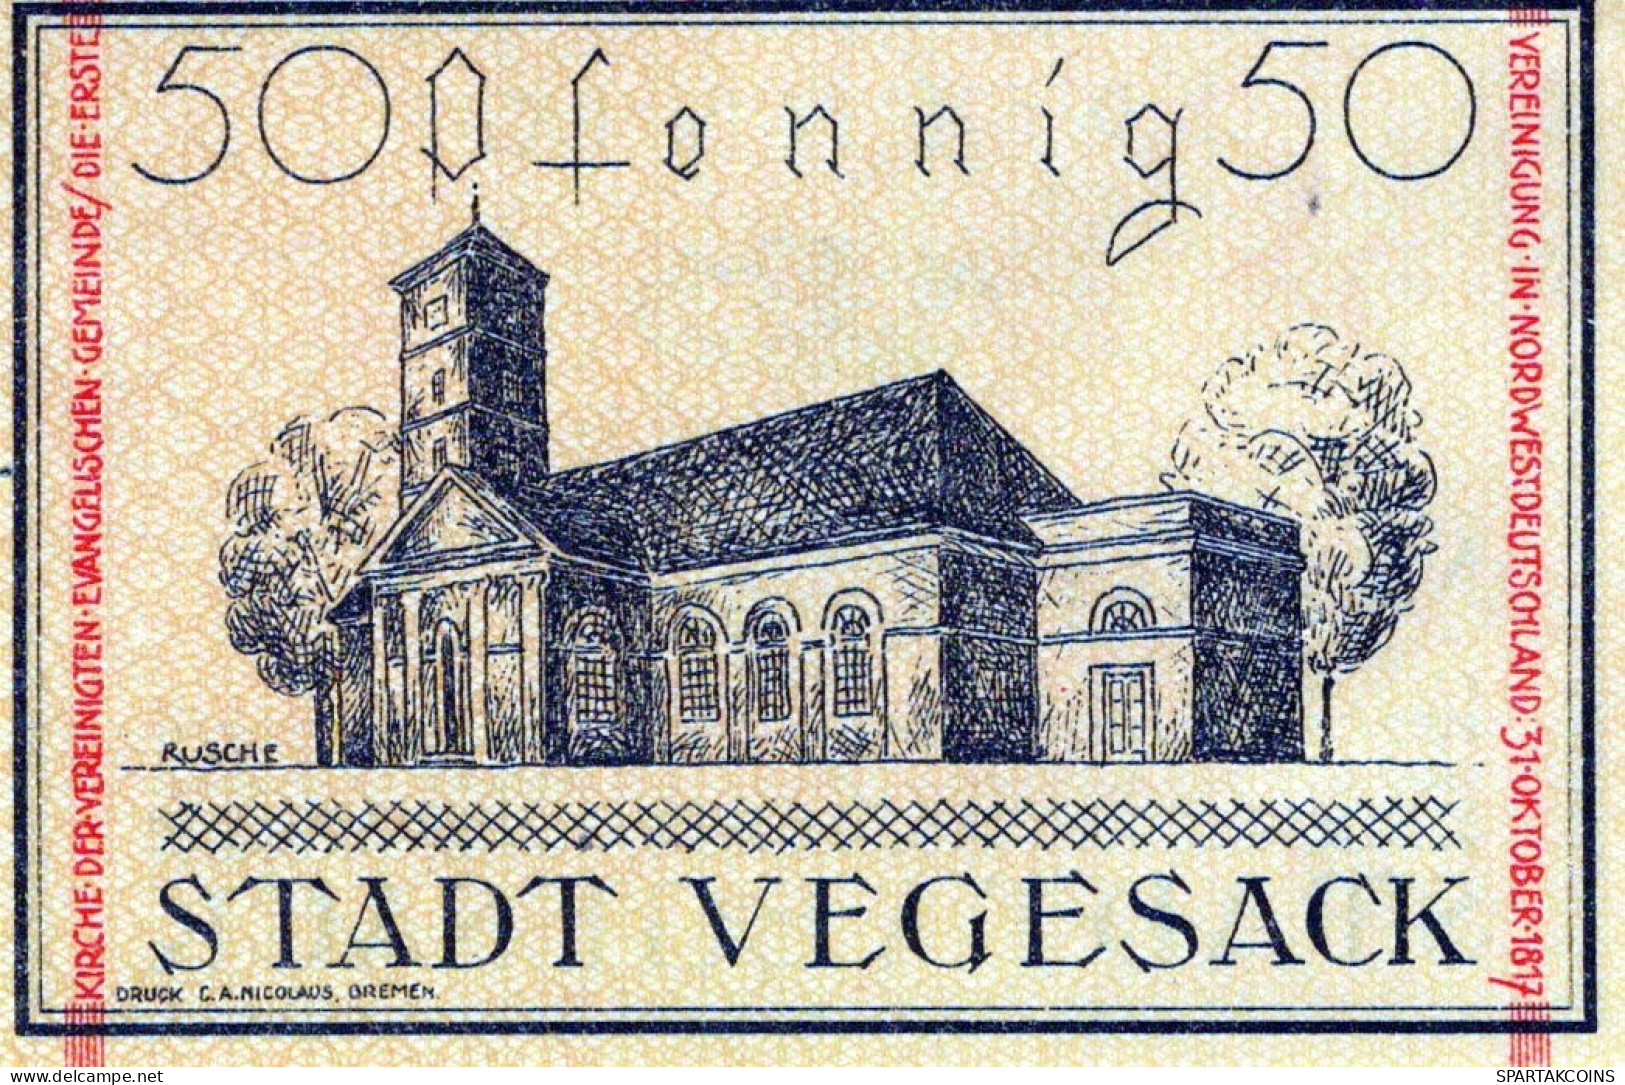 50 PFENNIG 1921 Stadt VEGESACK Bremen UNC DEUTSCHLAND Notgeld Banknote #PJ029 - [11] Emissions Locales